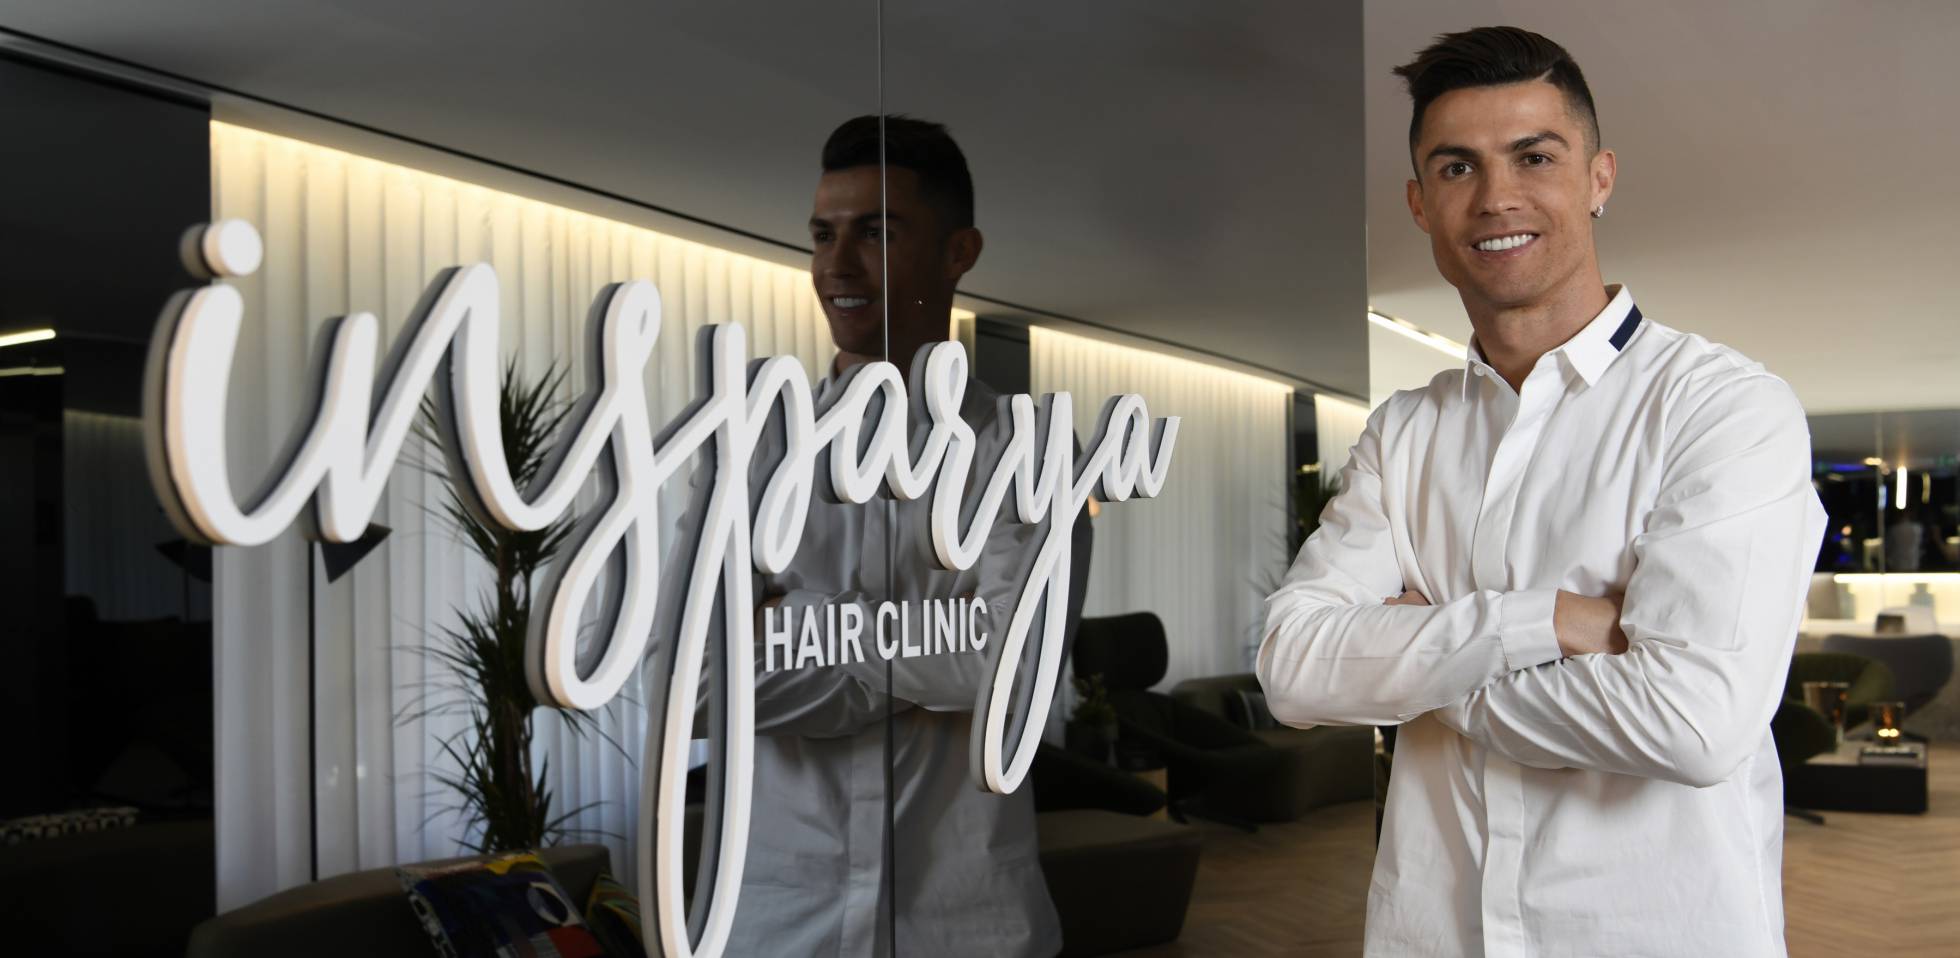 Клиники, занимающиеся пересадкой волос, процветают в Испании